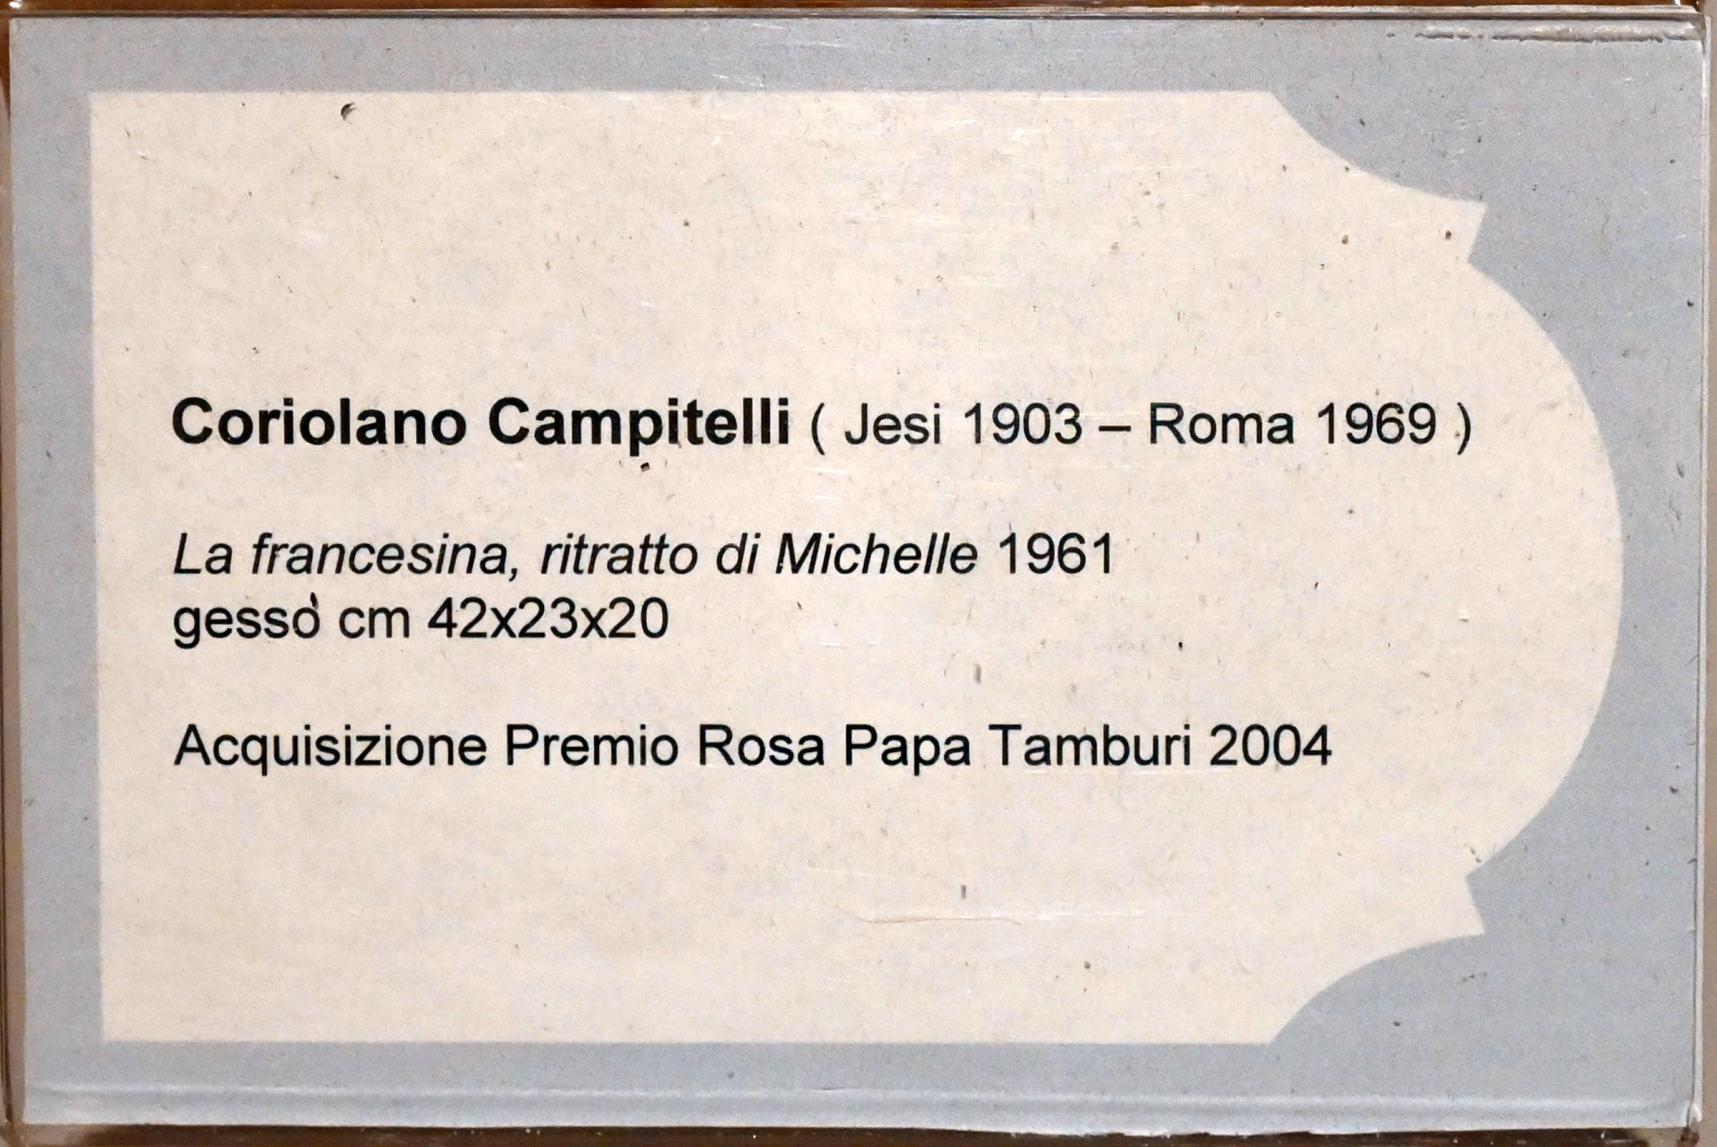 Coriolano Campitelli (1961), Das französische Mädchen, Porträt von Michelle, Jesi, Städtische Kunstgalerie, Obergeschoss Saal 6, 1961, Bild 3/3